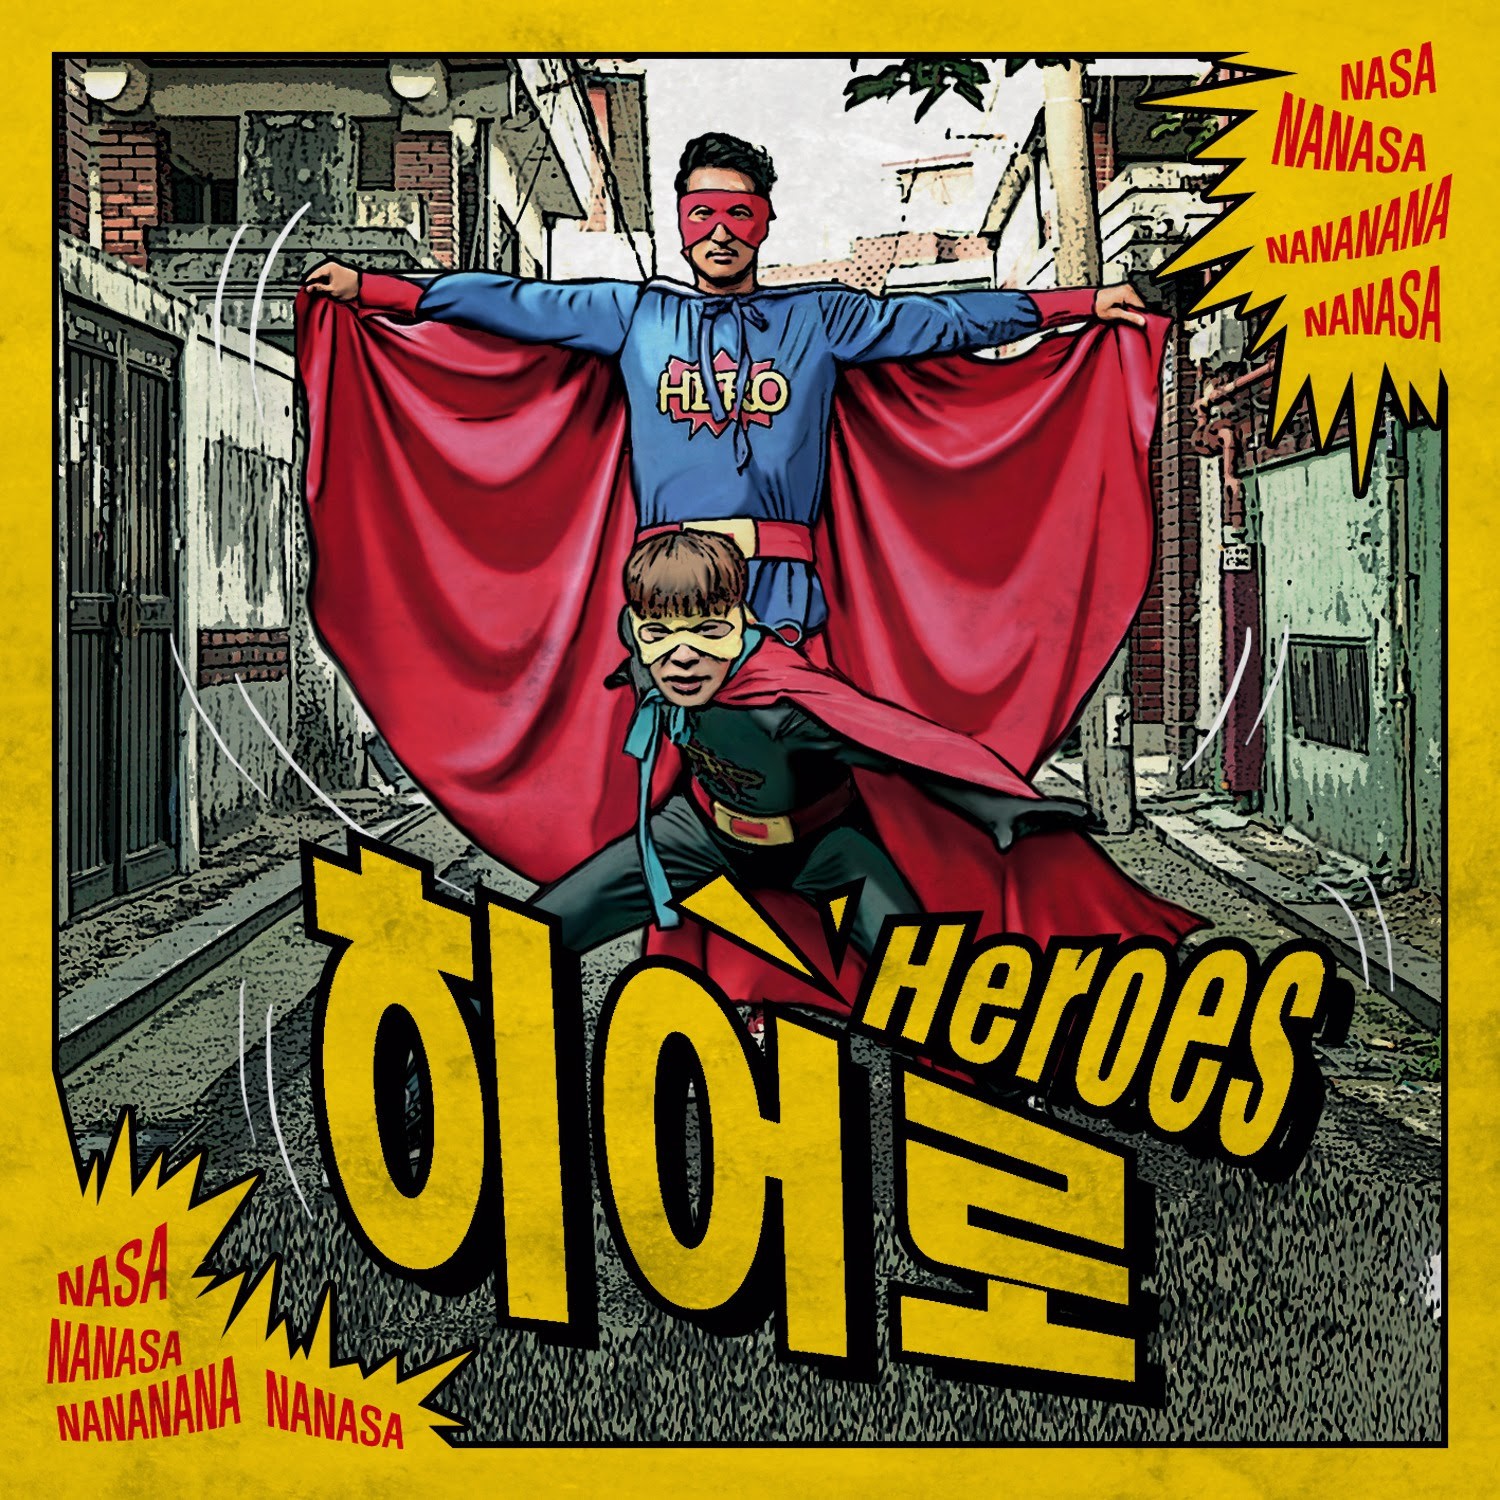 Heroes - Hero (뮤지&신현준) 나솨 나나솨~♬ (흠함, 흥겨움, 즐거움, 1분컷)